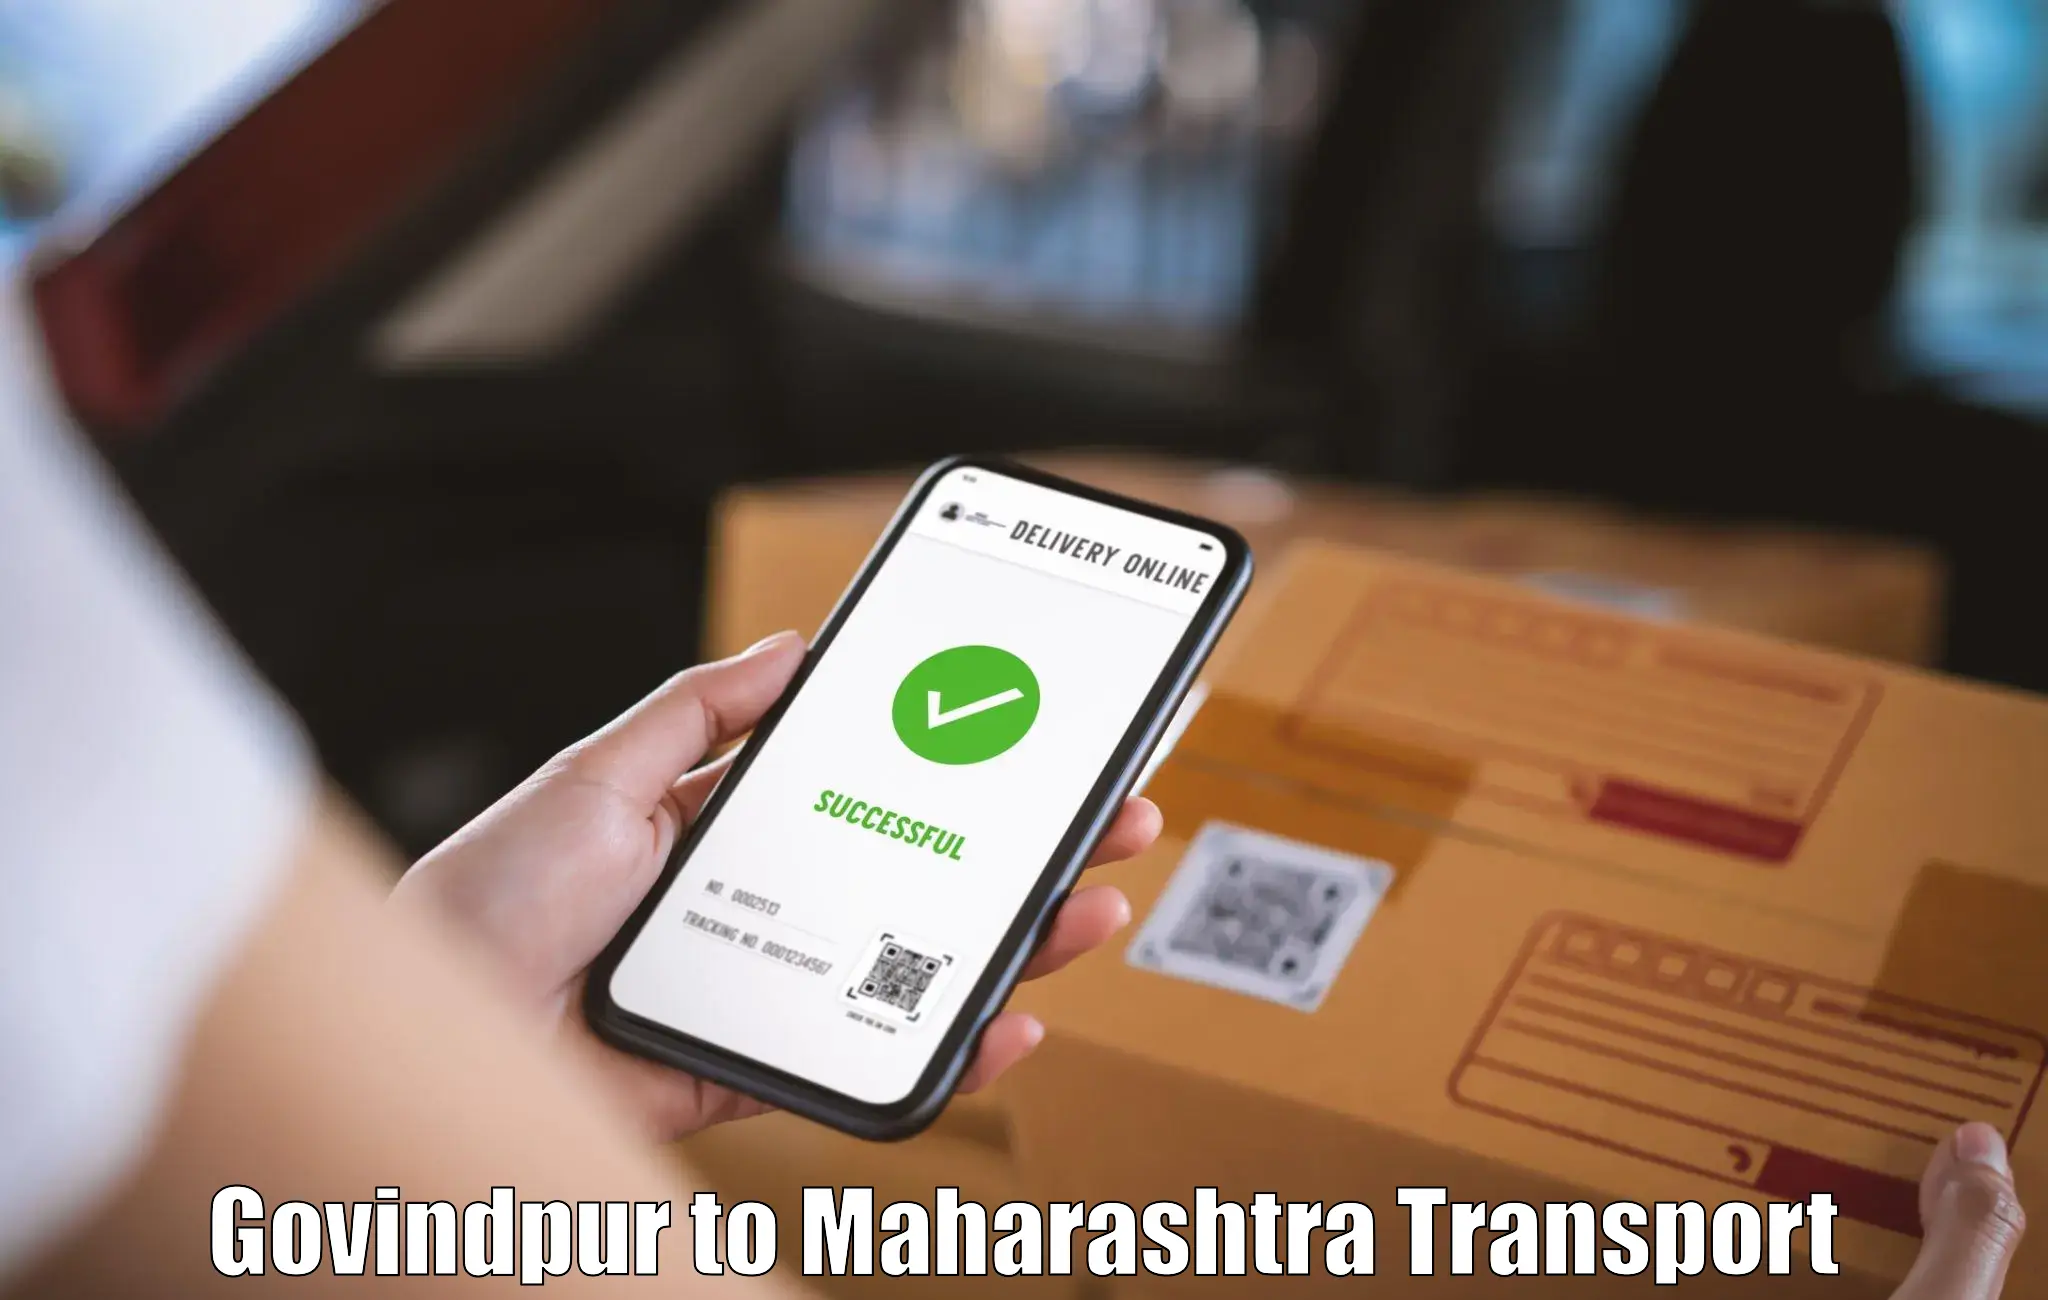 Delivery service Govindpur to Kurkheda